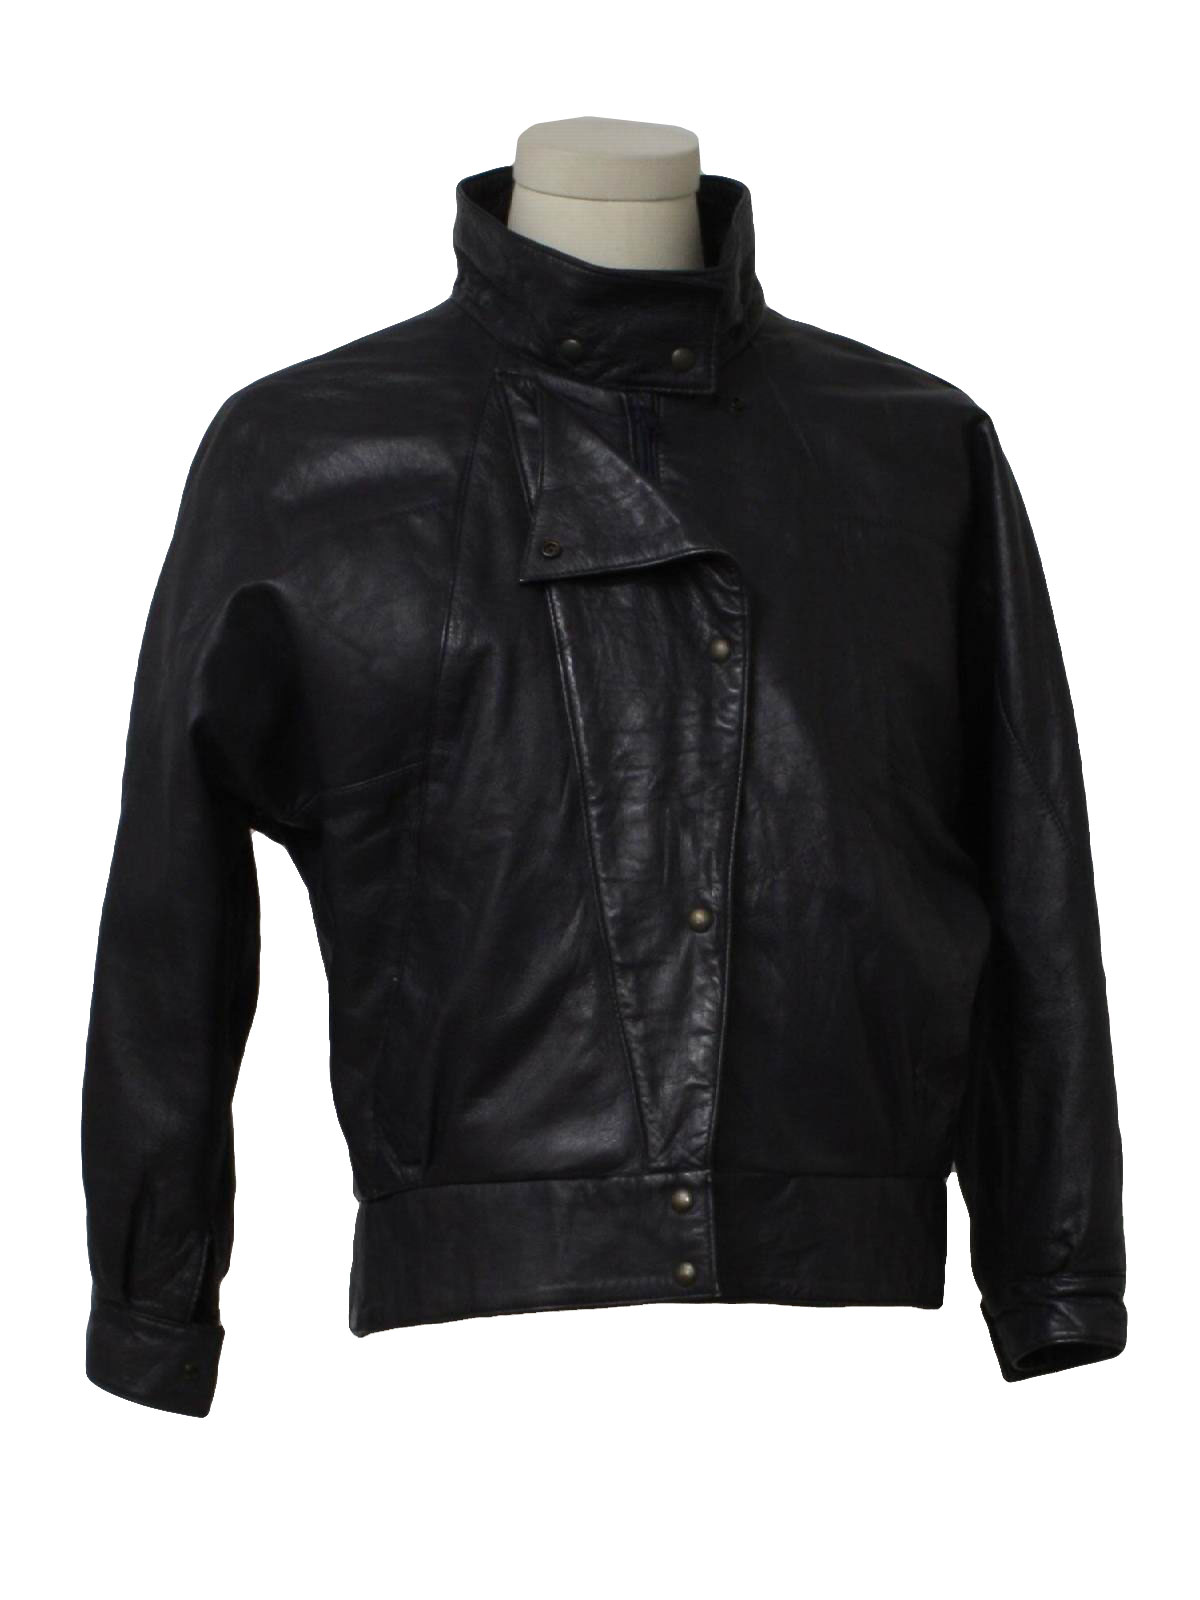 80's Vintage Leather Jacket: 80s -Echtes Leder (German for Genuine